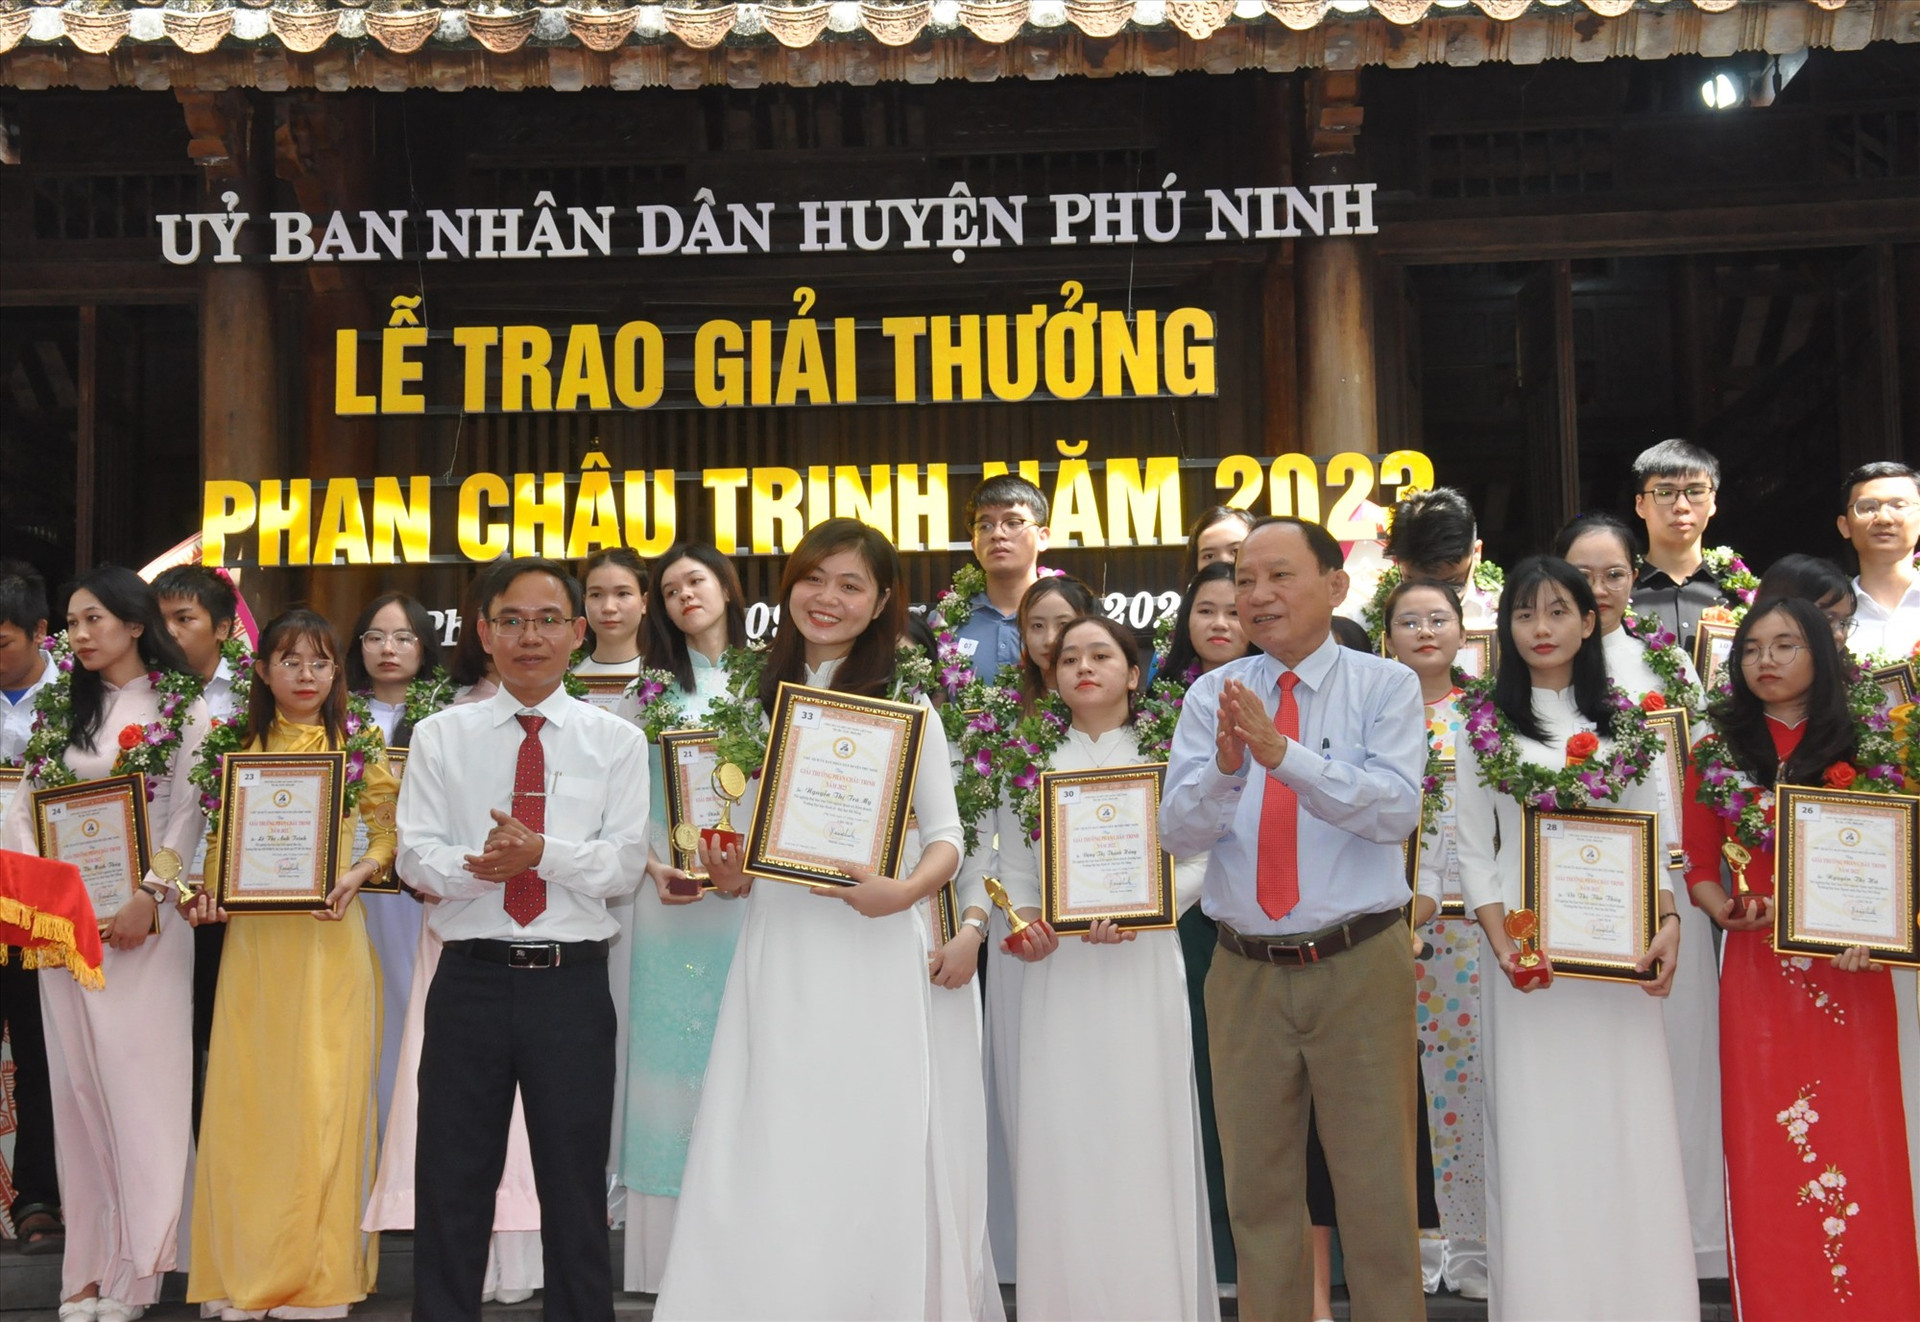 Lãnh đạo Thường trực Huyện ủy Phú Ninh trao giải thưởng Phan Châu Trinh cho các học sinh, sinh viên có thành tích học tập xuất sắc năm học 2022 - 2023. Ảnh: N.Đ